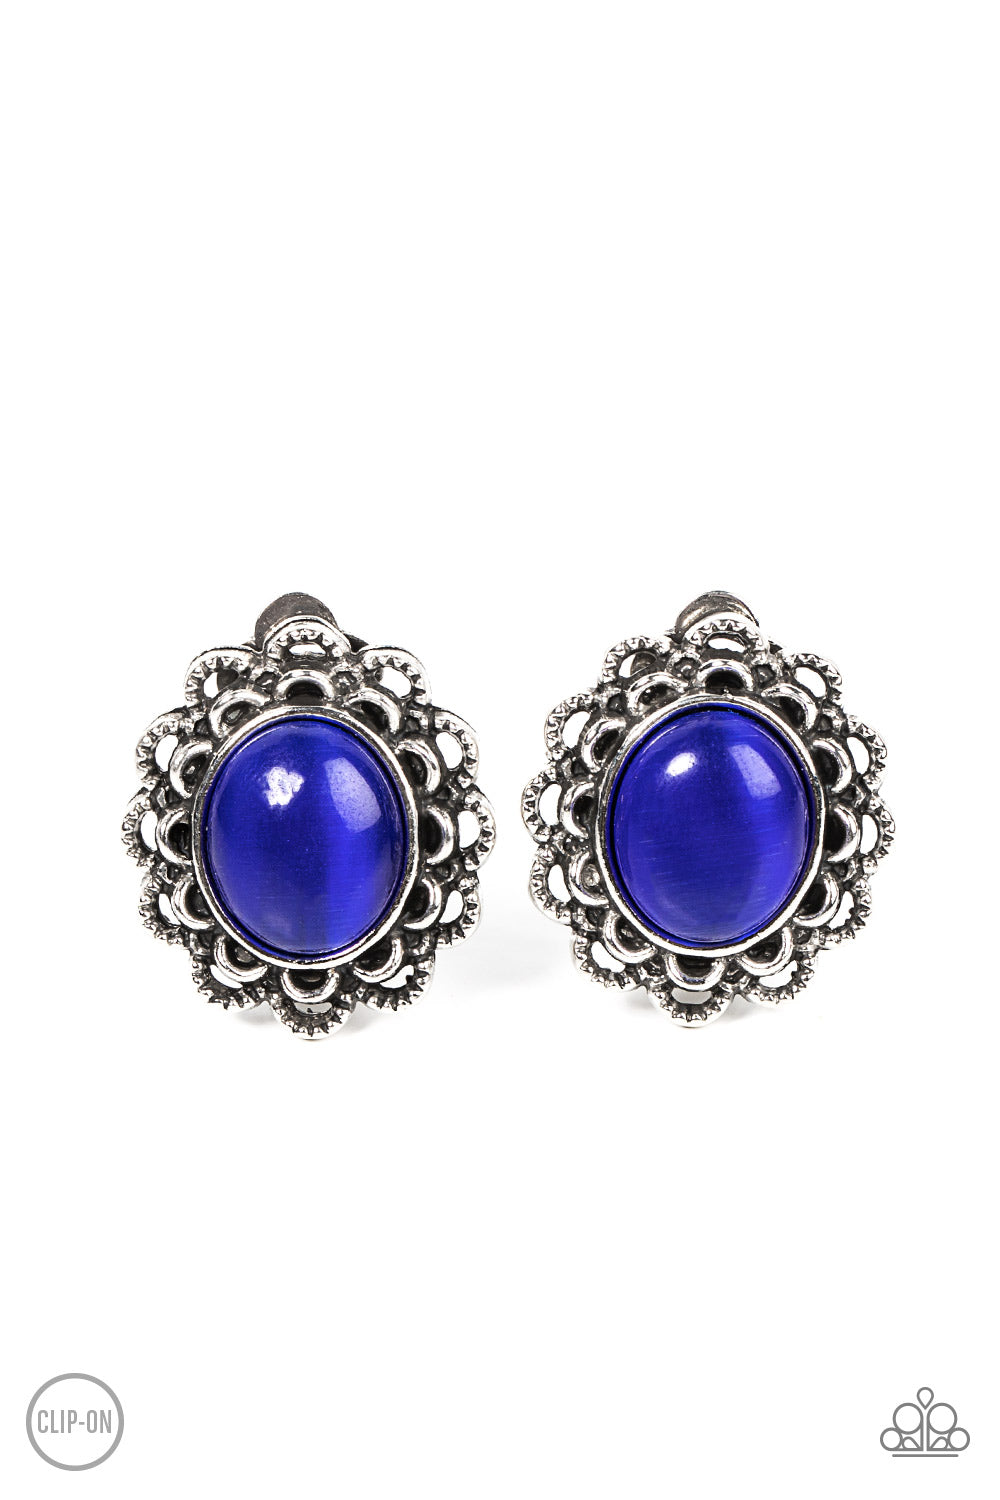 Garden Gazebo Paparazzi Accessories Clip On Earrings - Blue